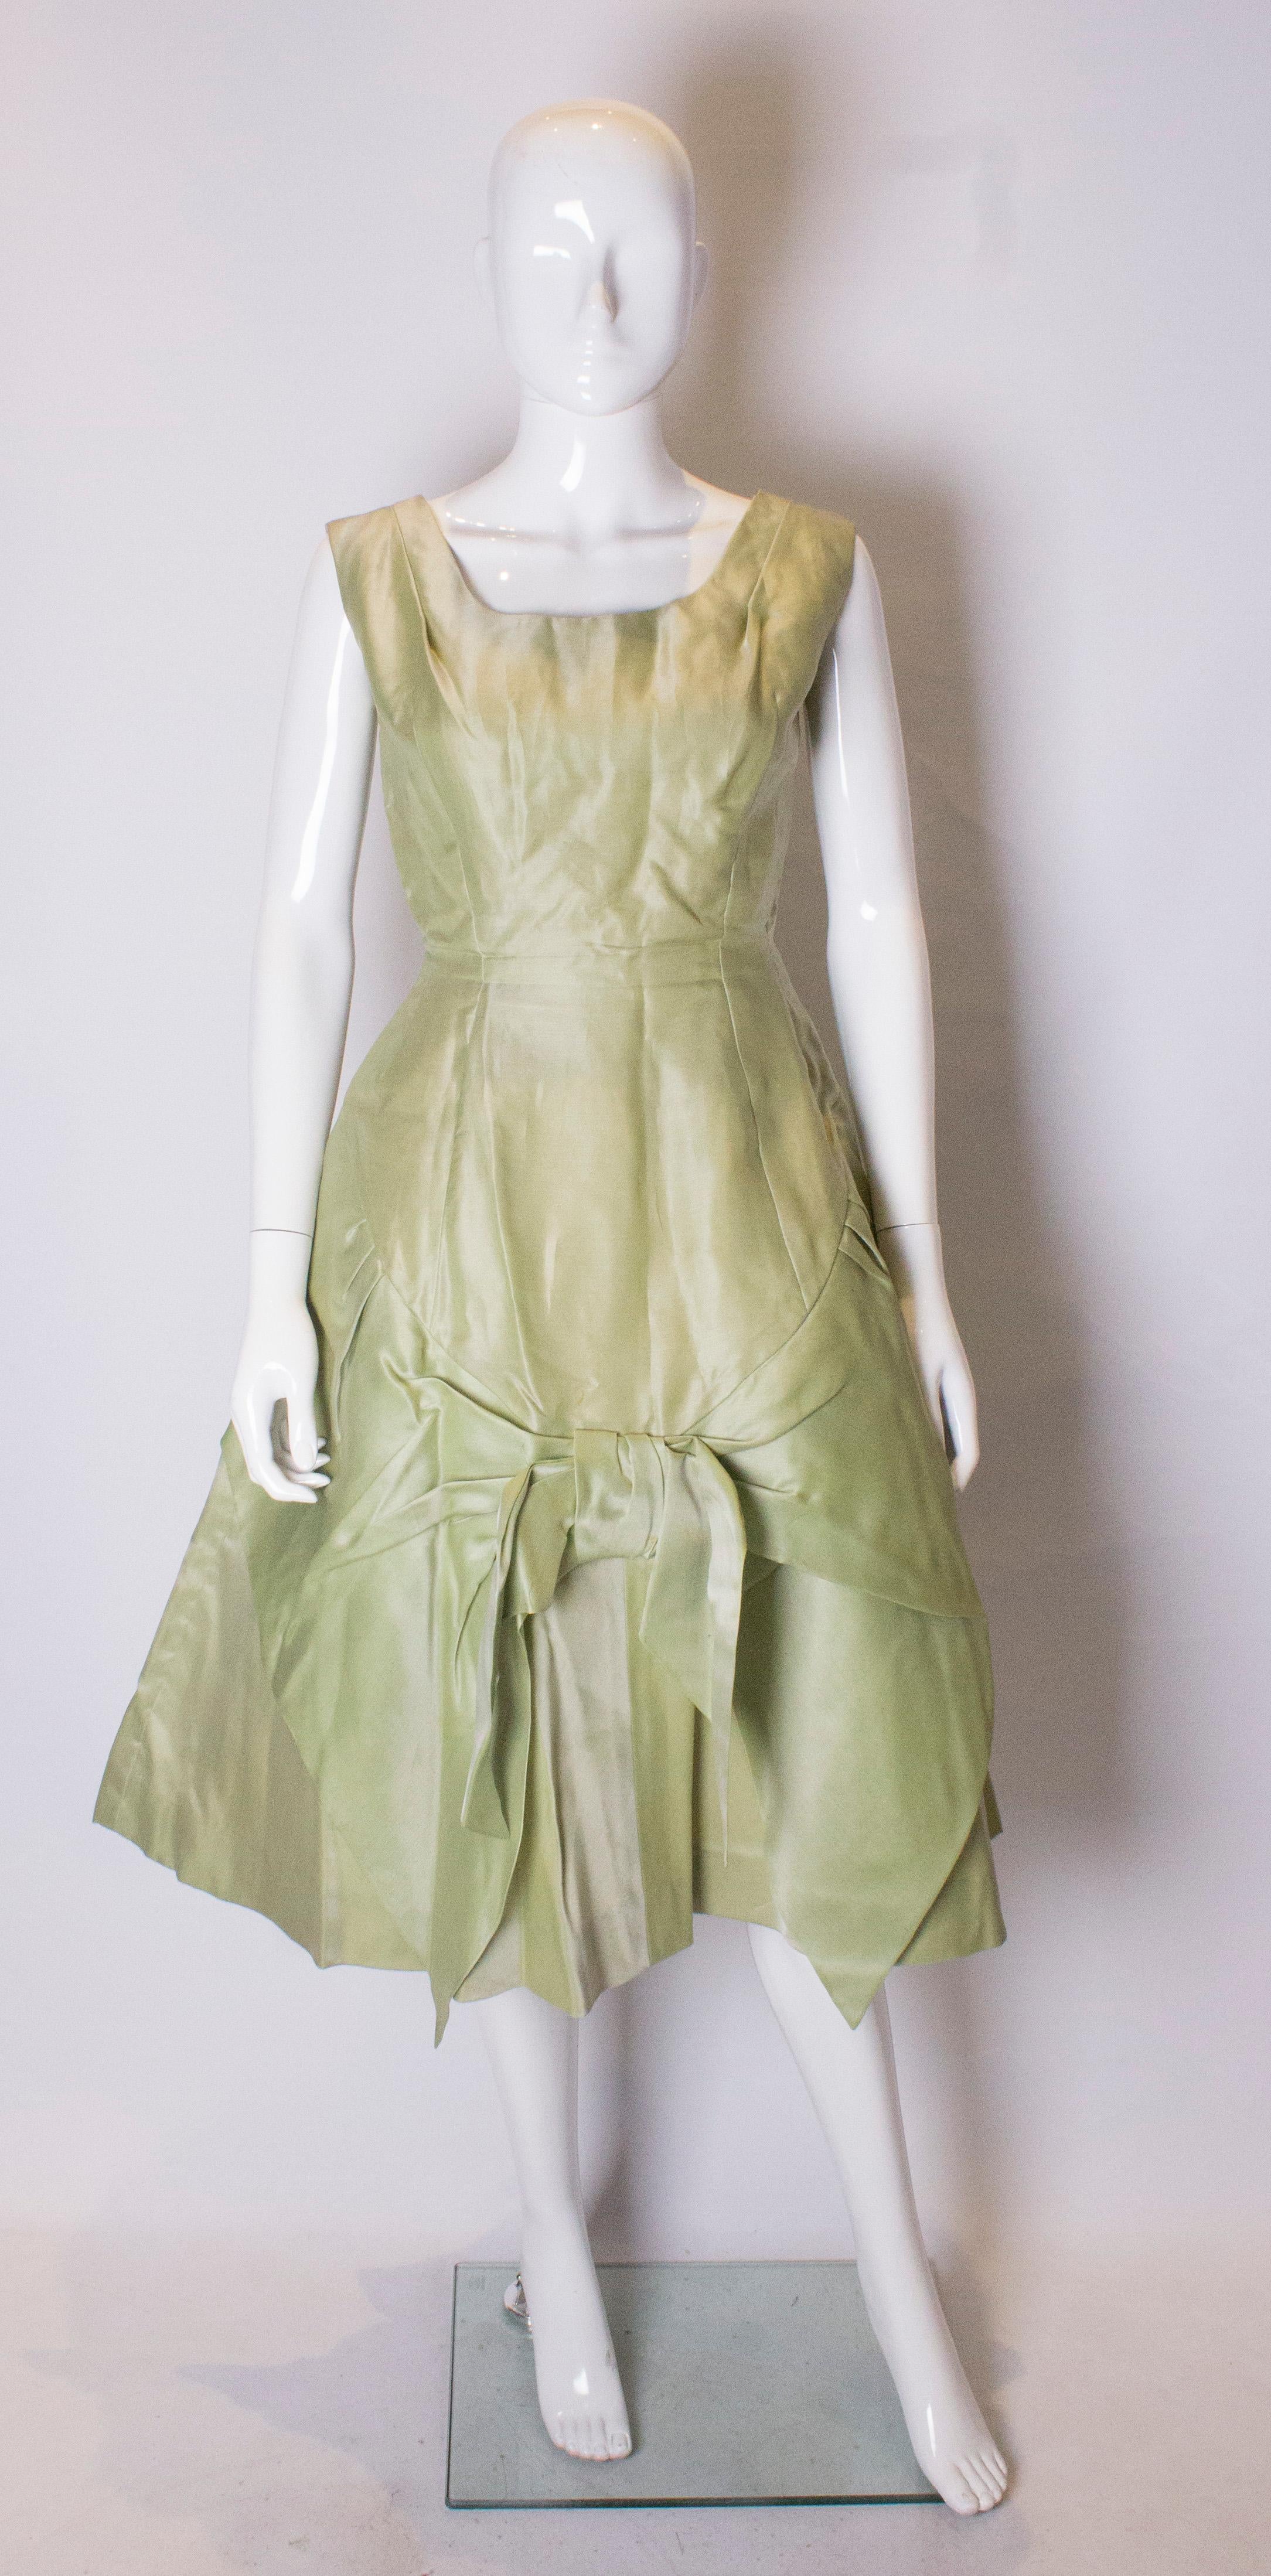 Ein hübsches Vintage-Cocktailkleid von Cresta Couture. Das Kleid ist pistaziengrün und hat einen Rundhalsausschnitt, einen vollen Rock mit Schleife, einen zentralen Reißverschluss am Rücken und mehrere Schichten Petticoats.